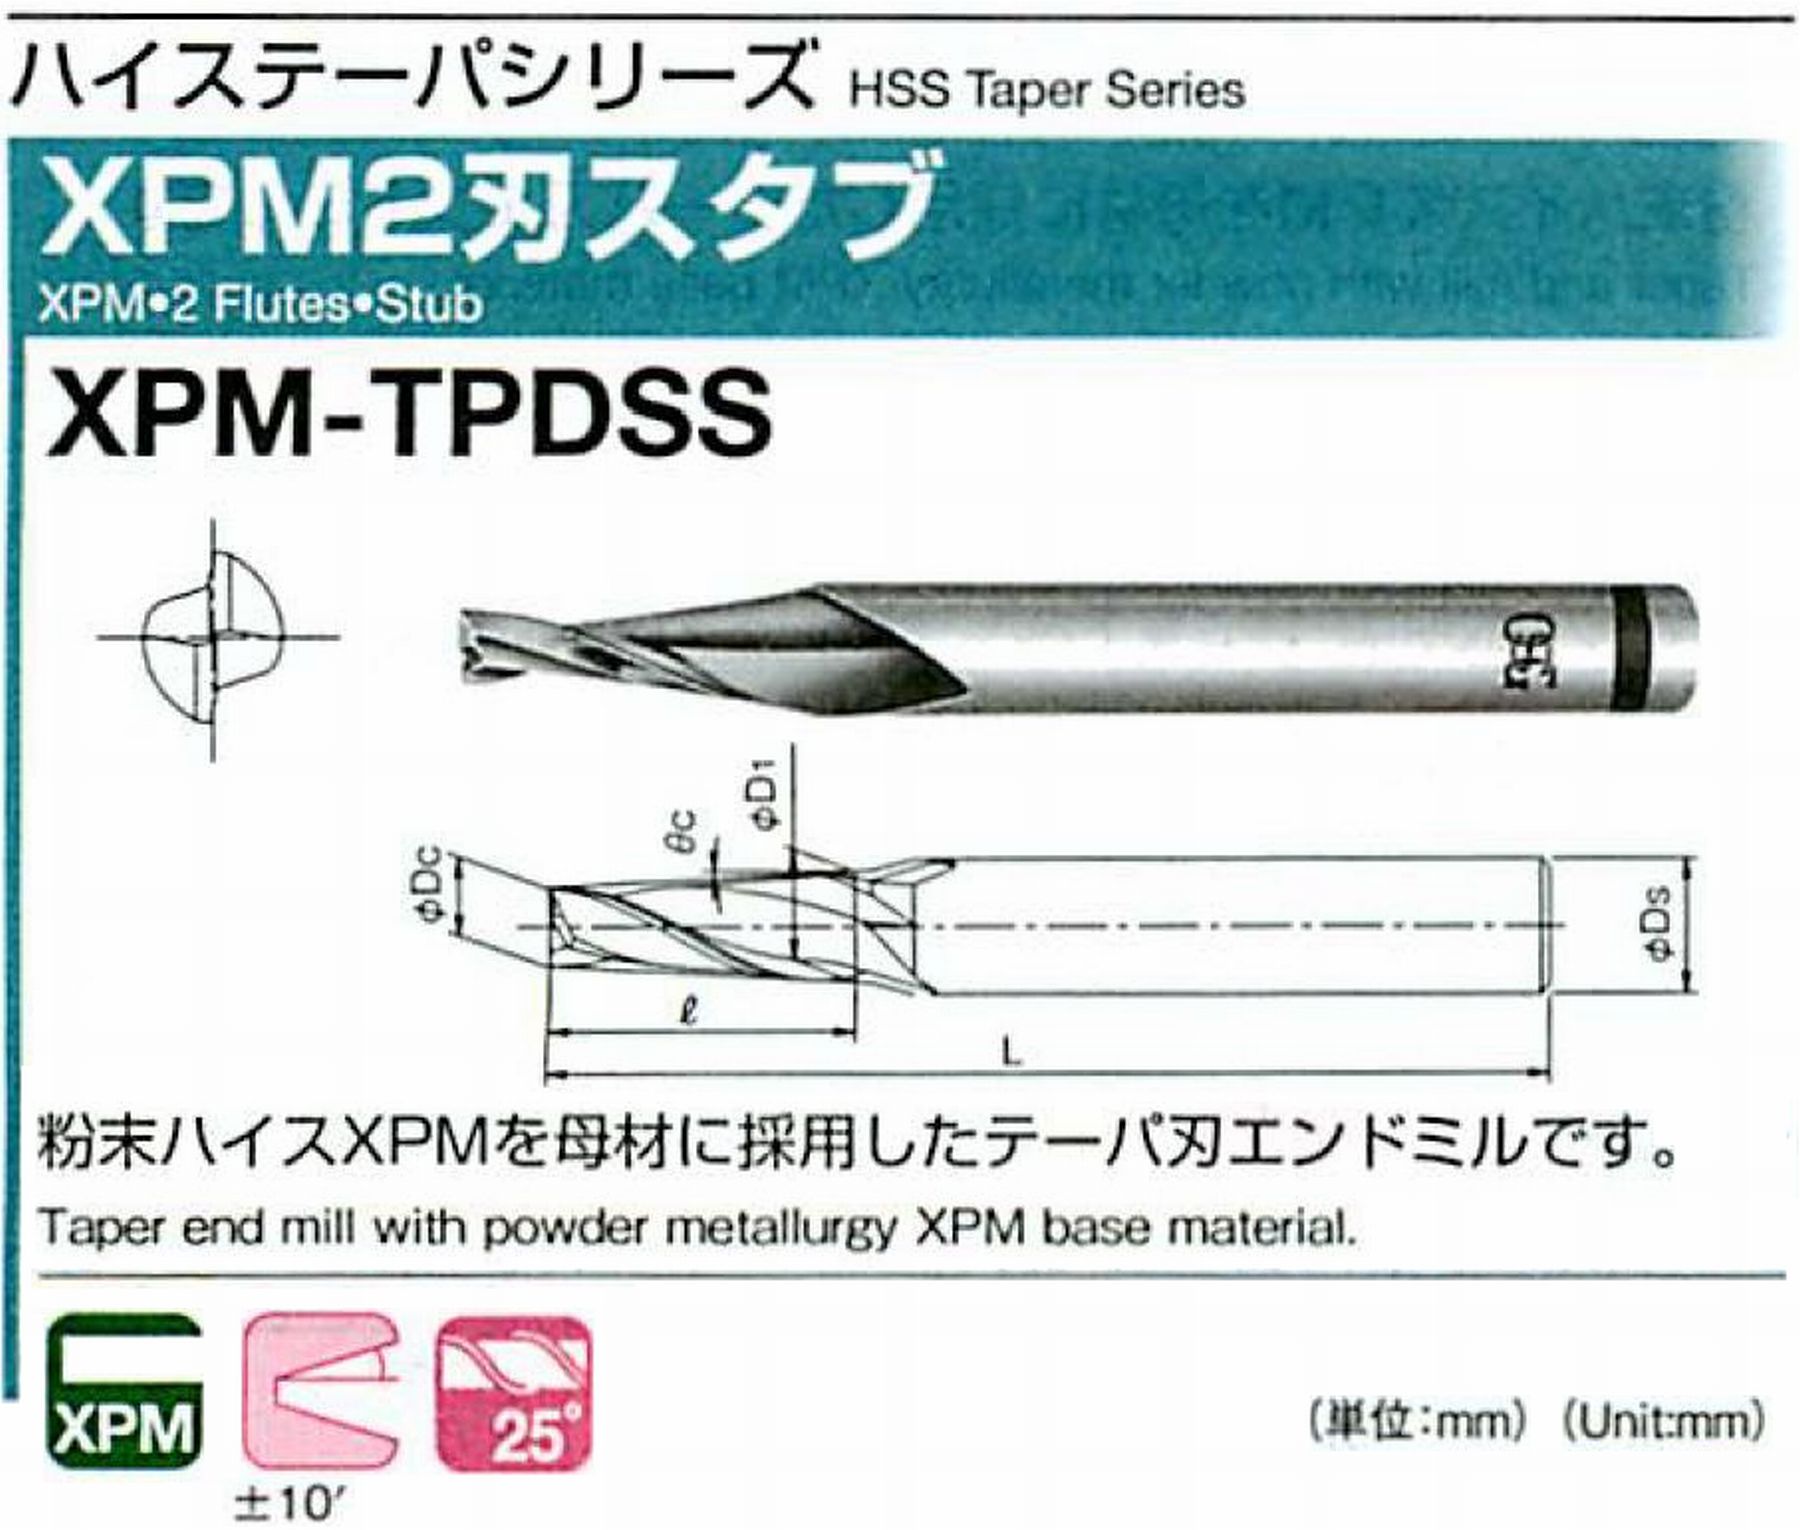 オーエスジー/OSG XPM2刃スタブ XPM-TPDSS 外径×刃部テーパ半角1×2° 全長48 刃長4 シャンク径6mm 大端径1.28